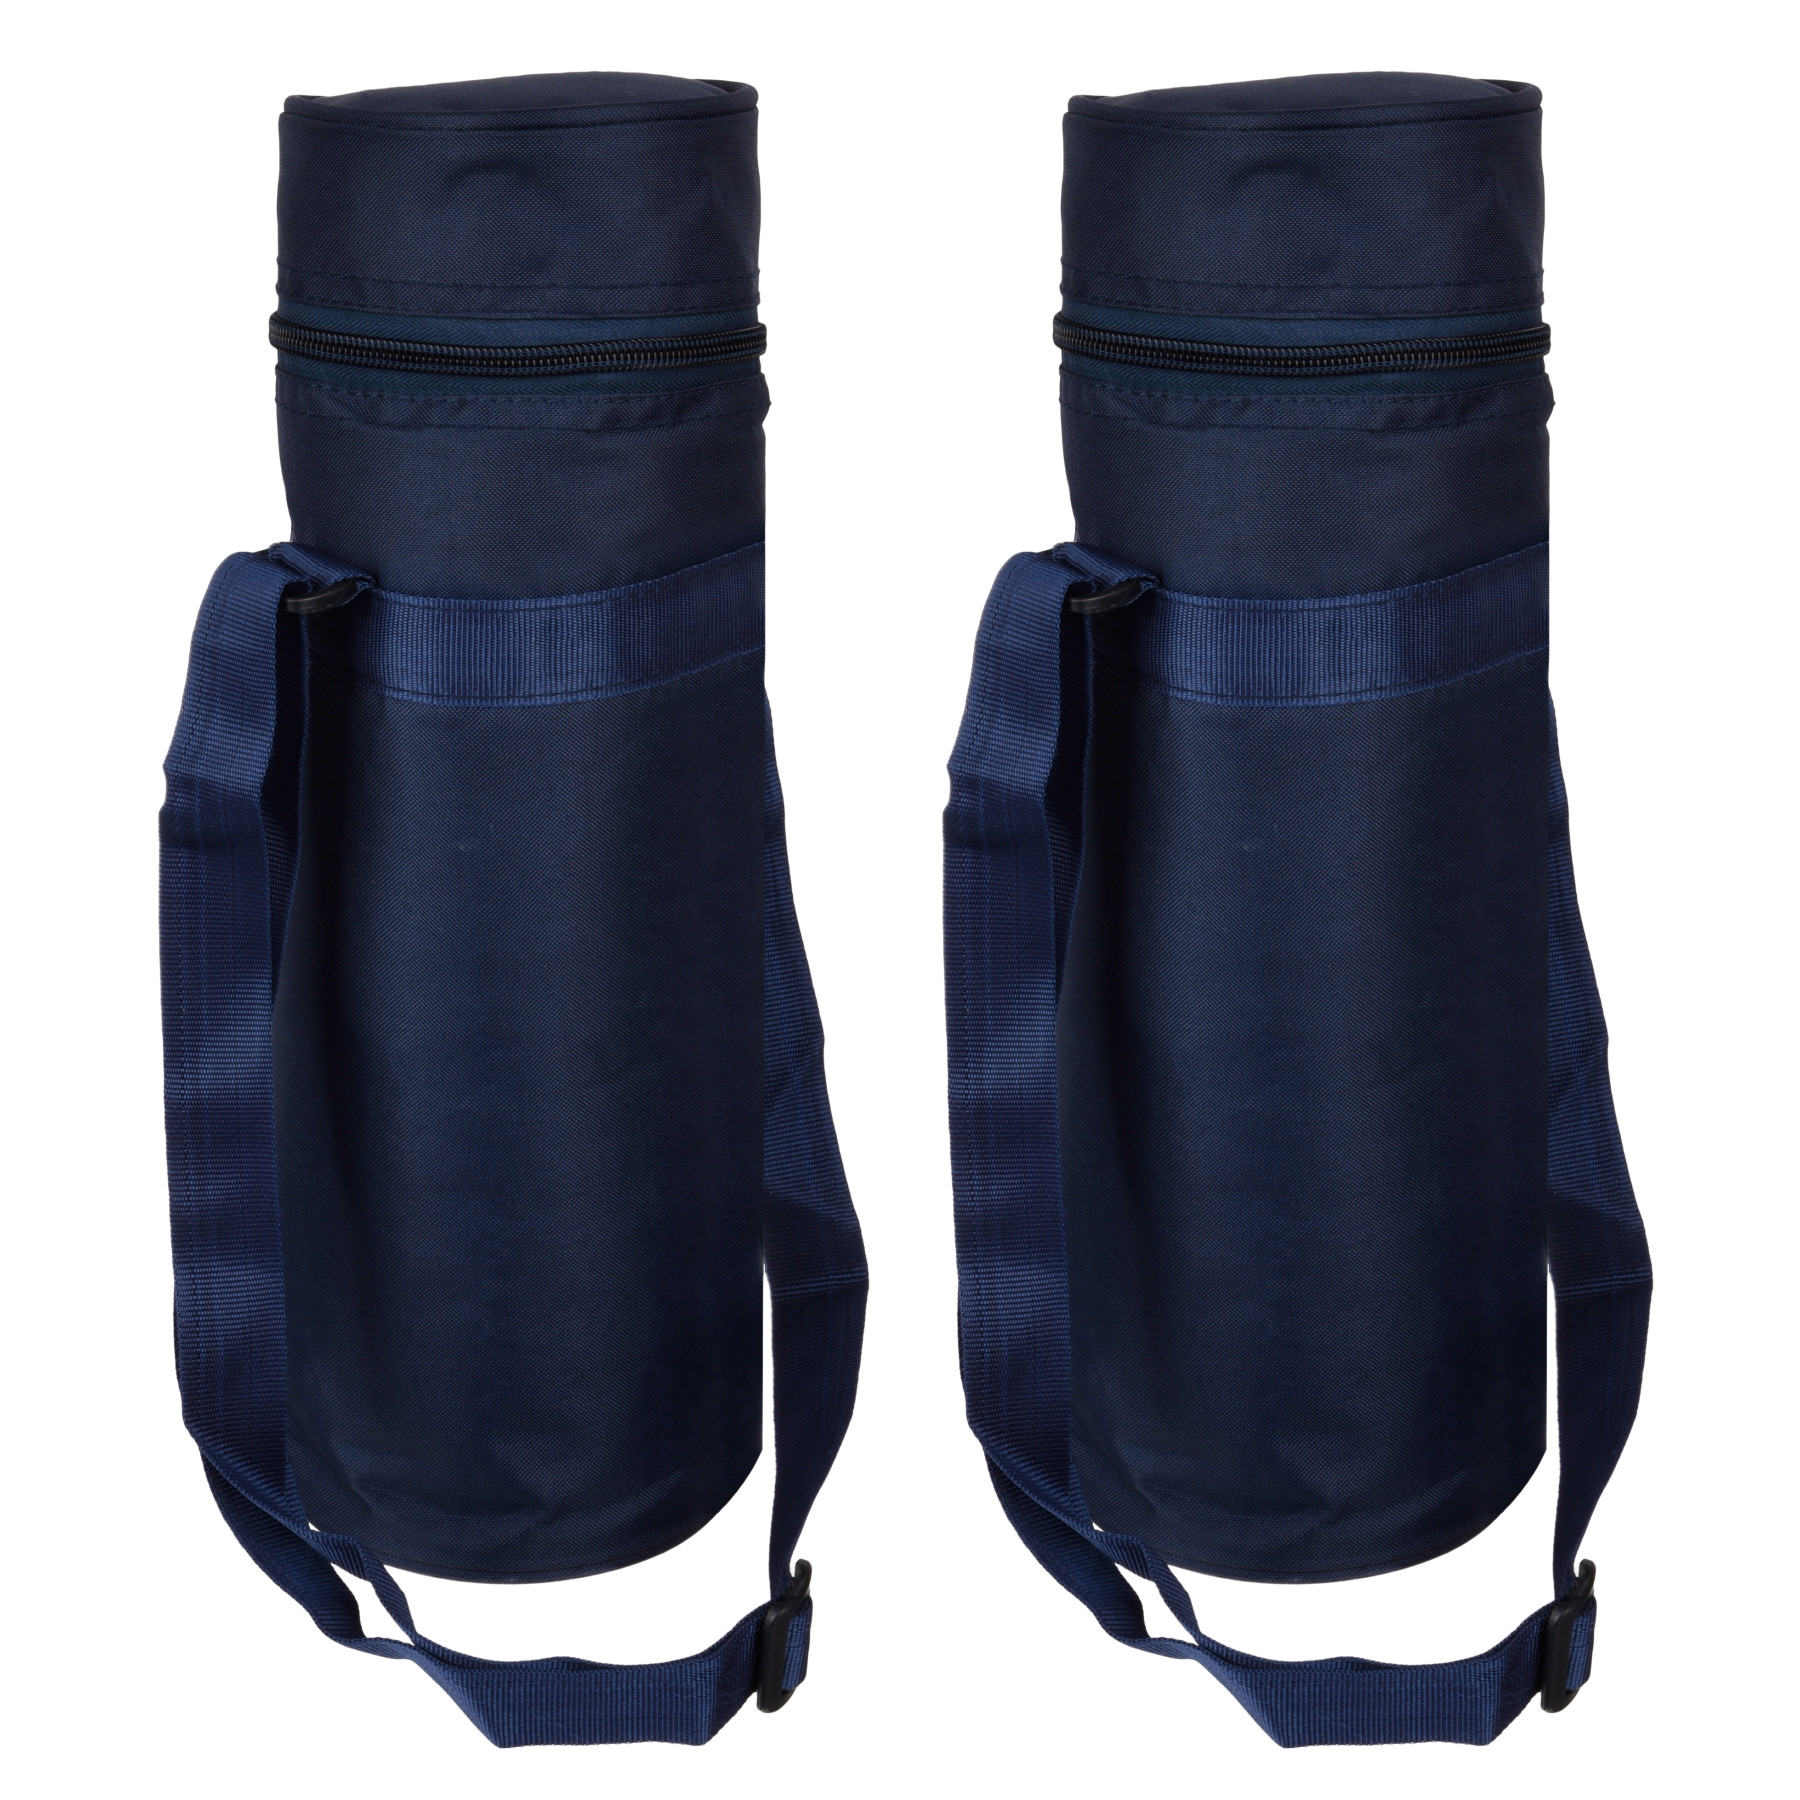 Kuber Industries Bottle Bag | Travel Water Bottle Bag | Bottle Protector Bag | Water Bottle Carrier Bag | Bottle Carry Bag | Adjustable Strap & Zipper Closure | 1 LTR | Blue